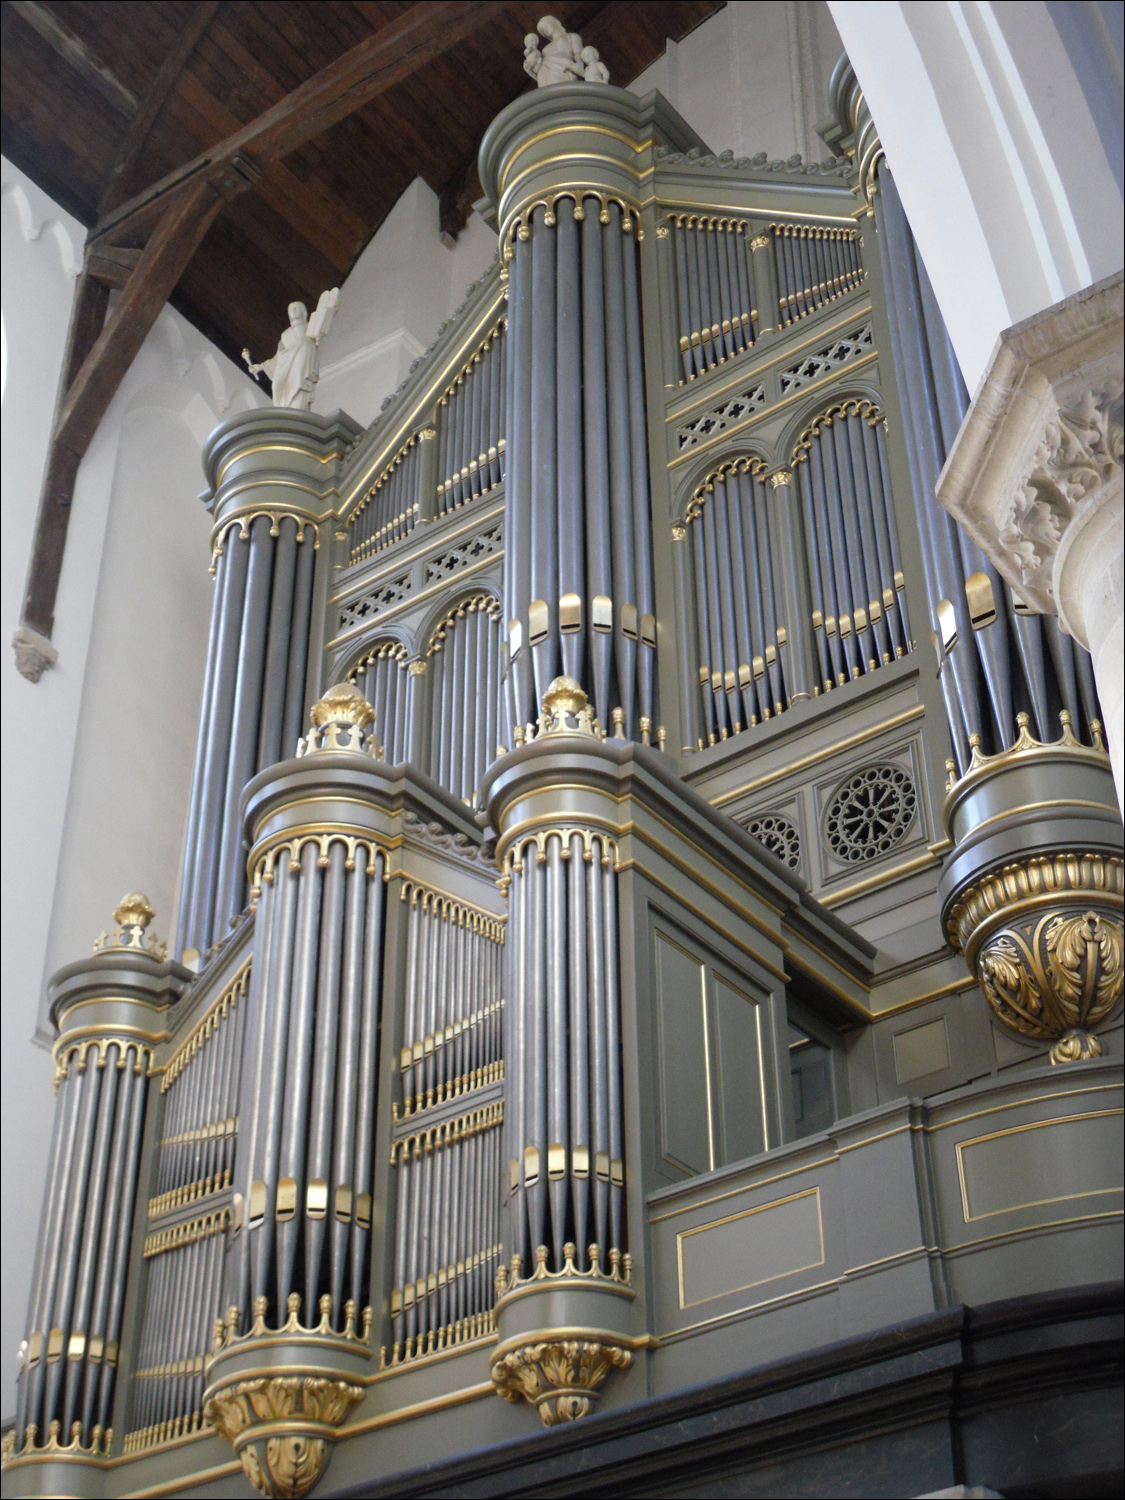 Oude Kerk- Church organ